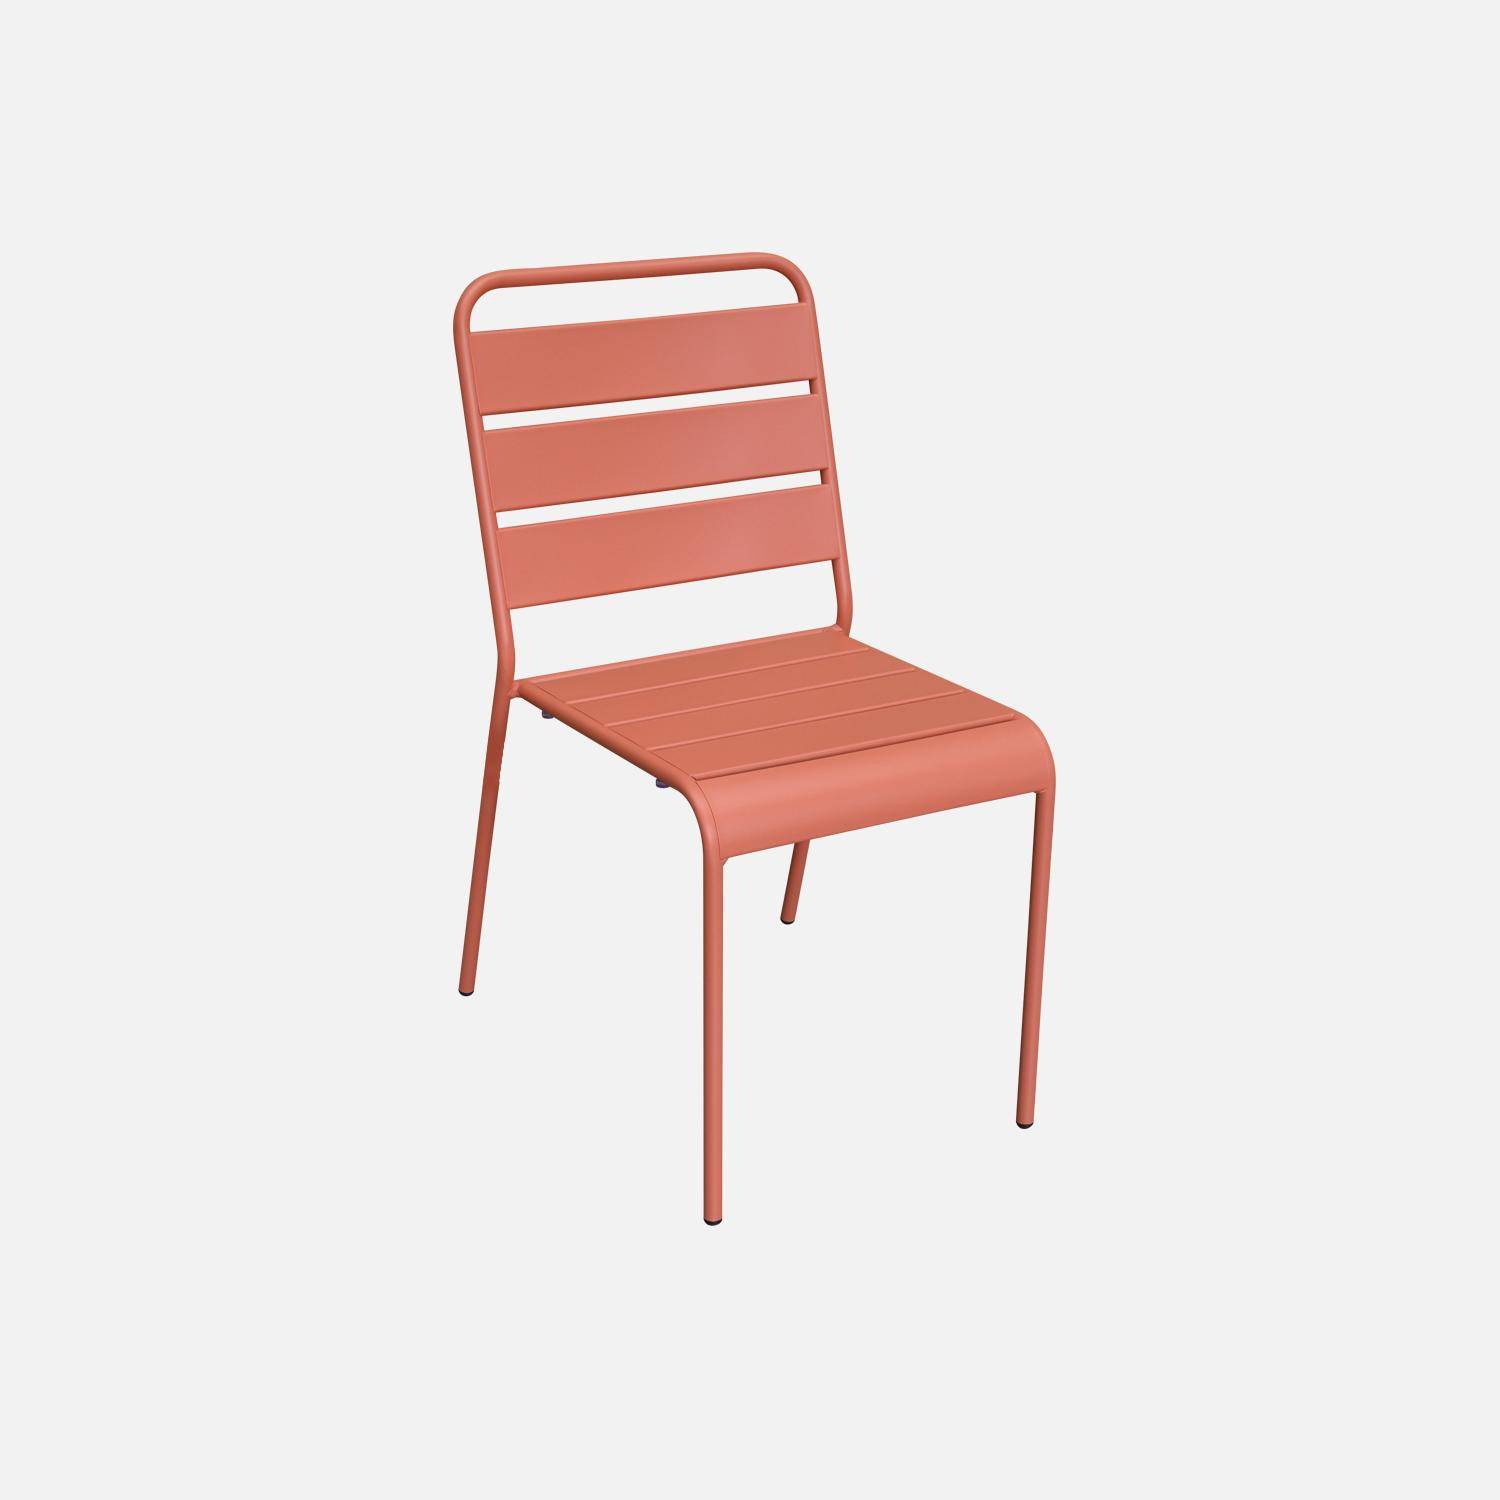 Lot de 4 chaises intérieur / extérieur en métal peinture antirouille empilables coloris rose saumon,sweeek,Photo2